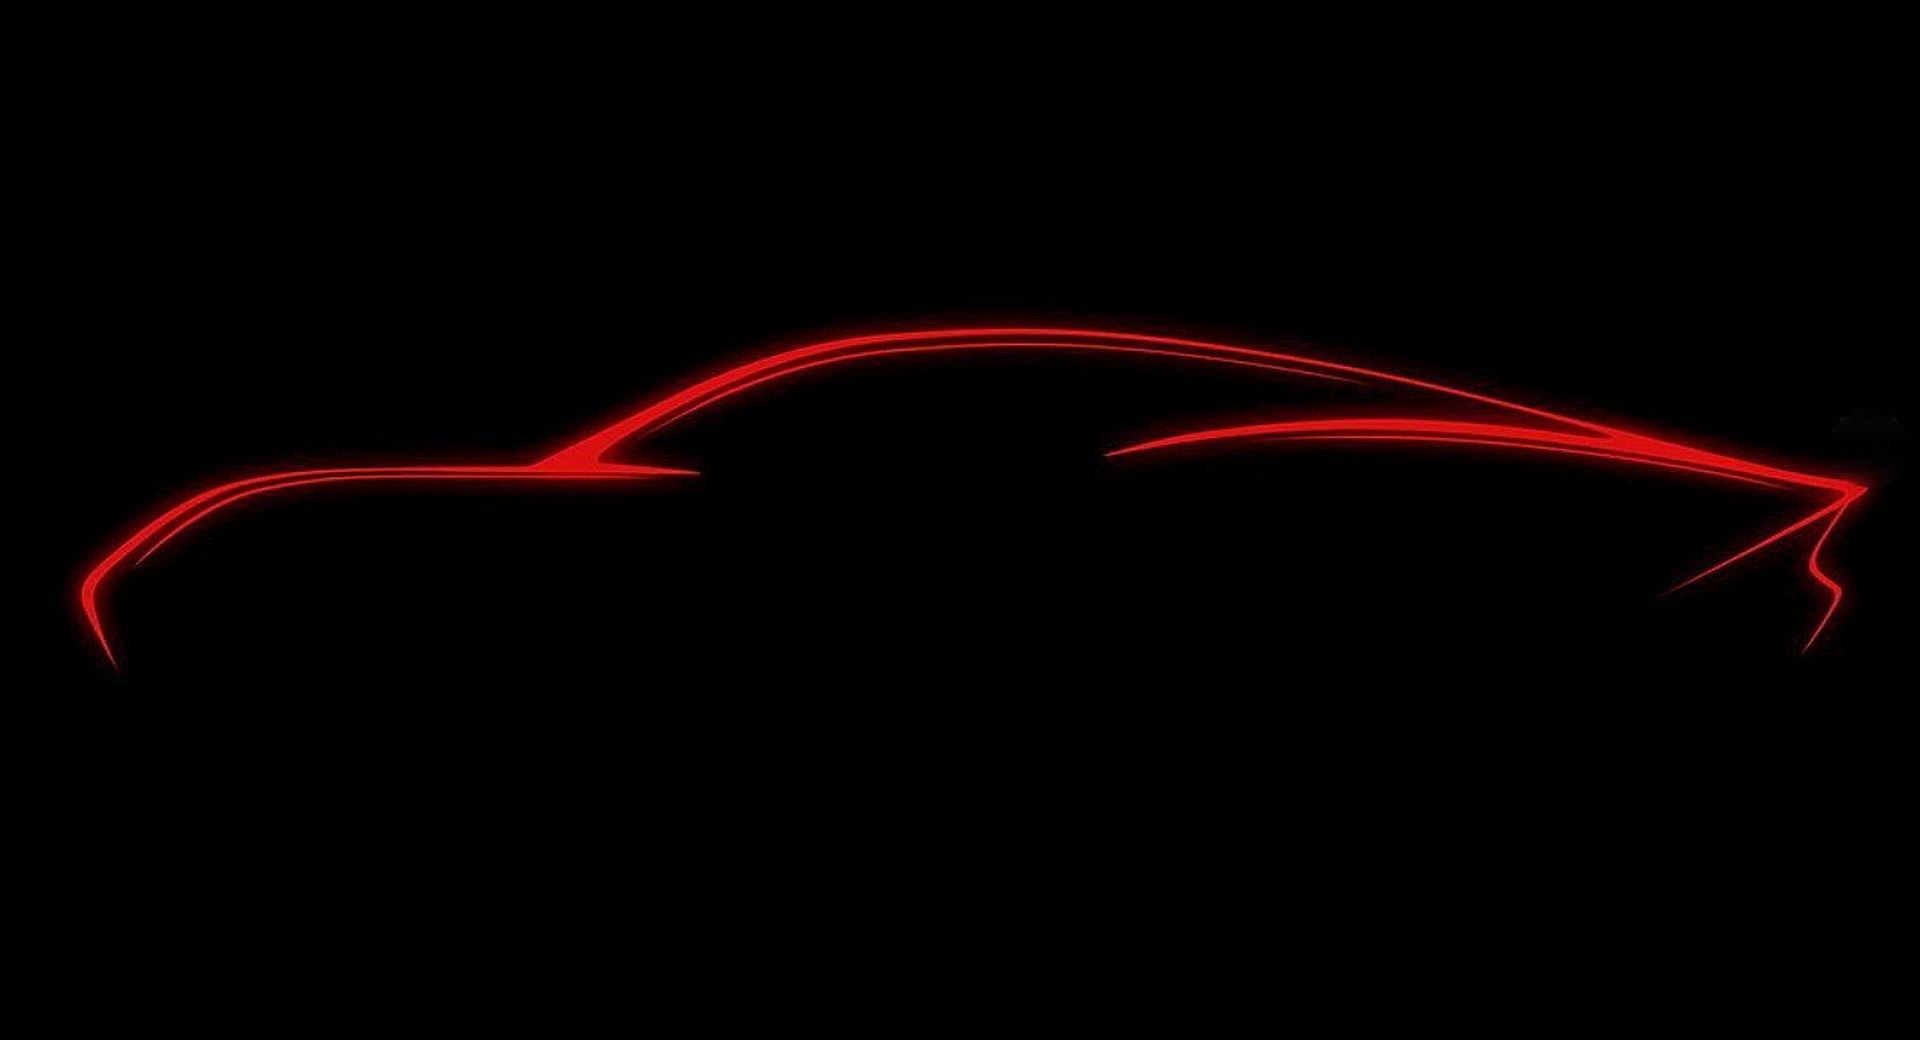 Руководитель отдела дизайна Mercedes дразнит концепт Vision AMG EV перед дебютом 19 мая